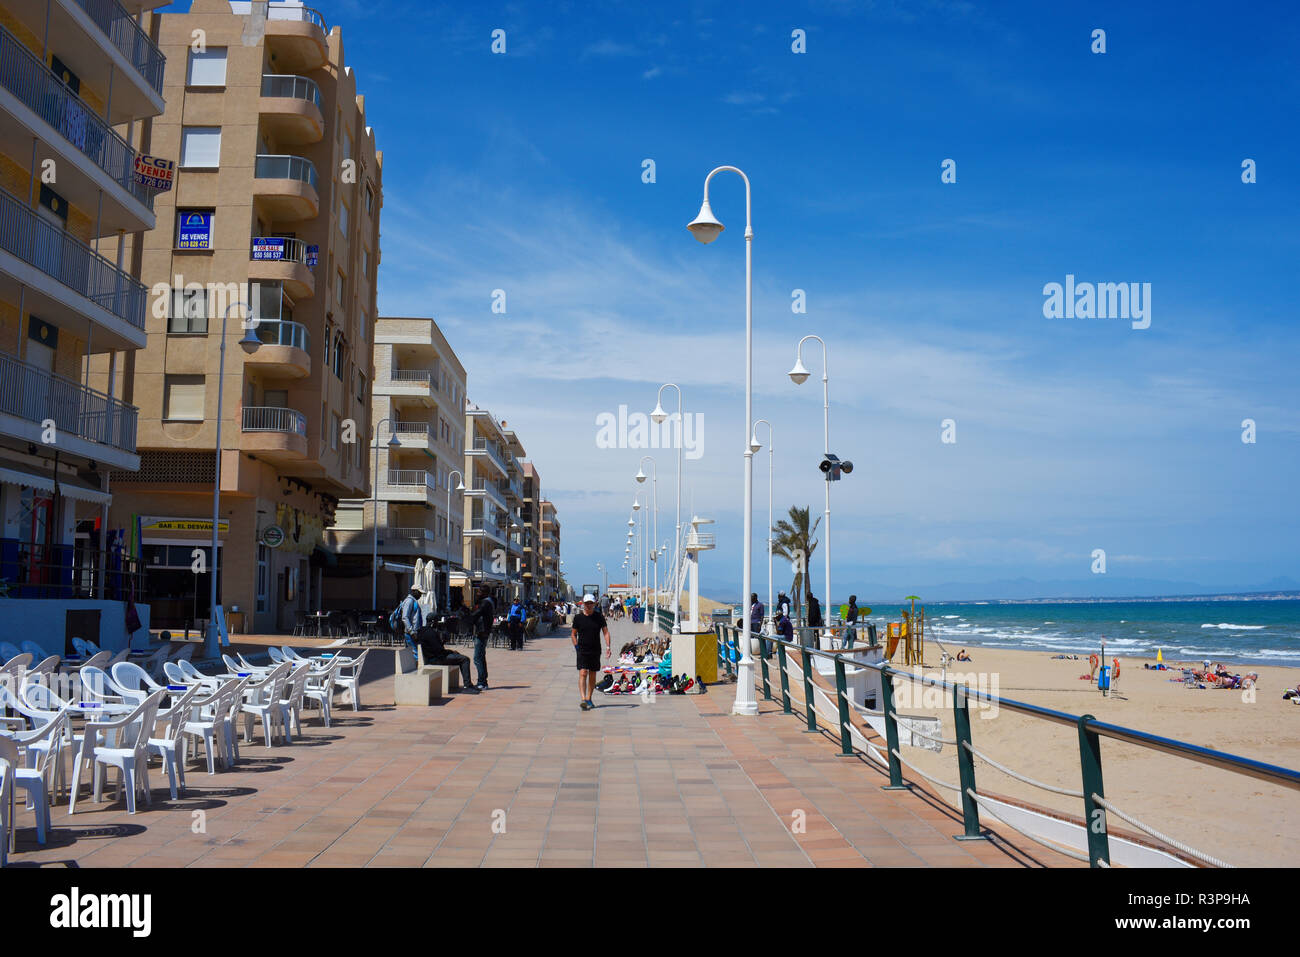 Guardamar del segura fotografías e imágenes de alta resolución - Alamy